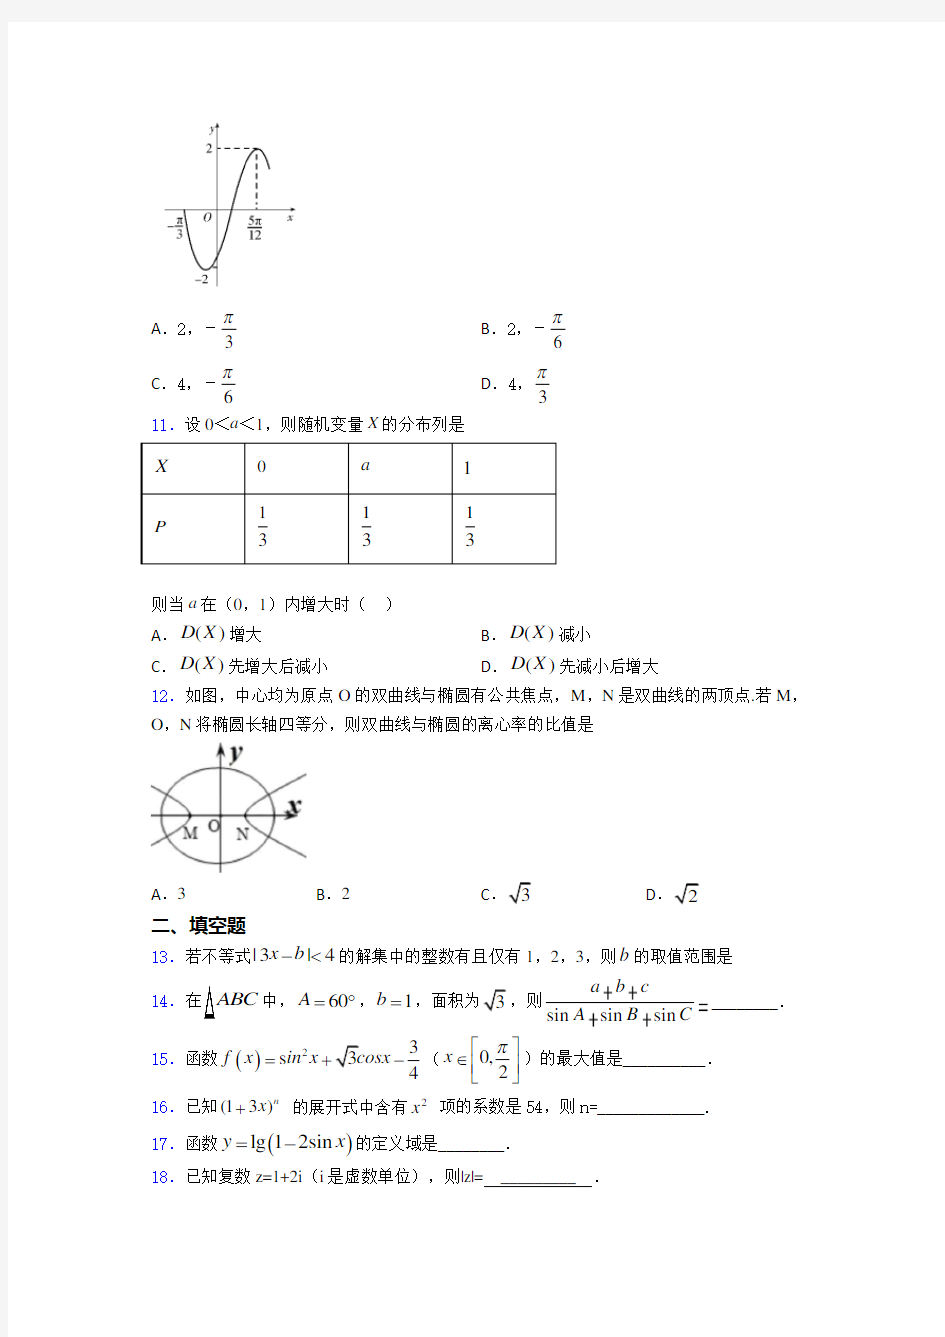 【必考题】数学高考试题(及答案)